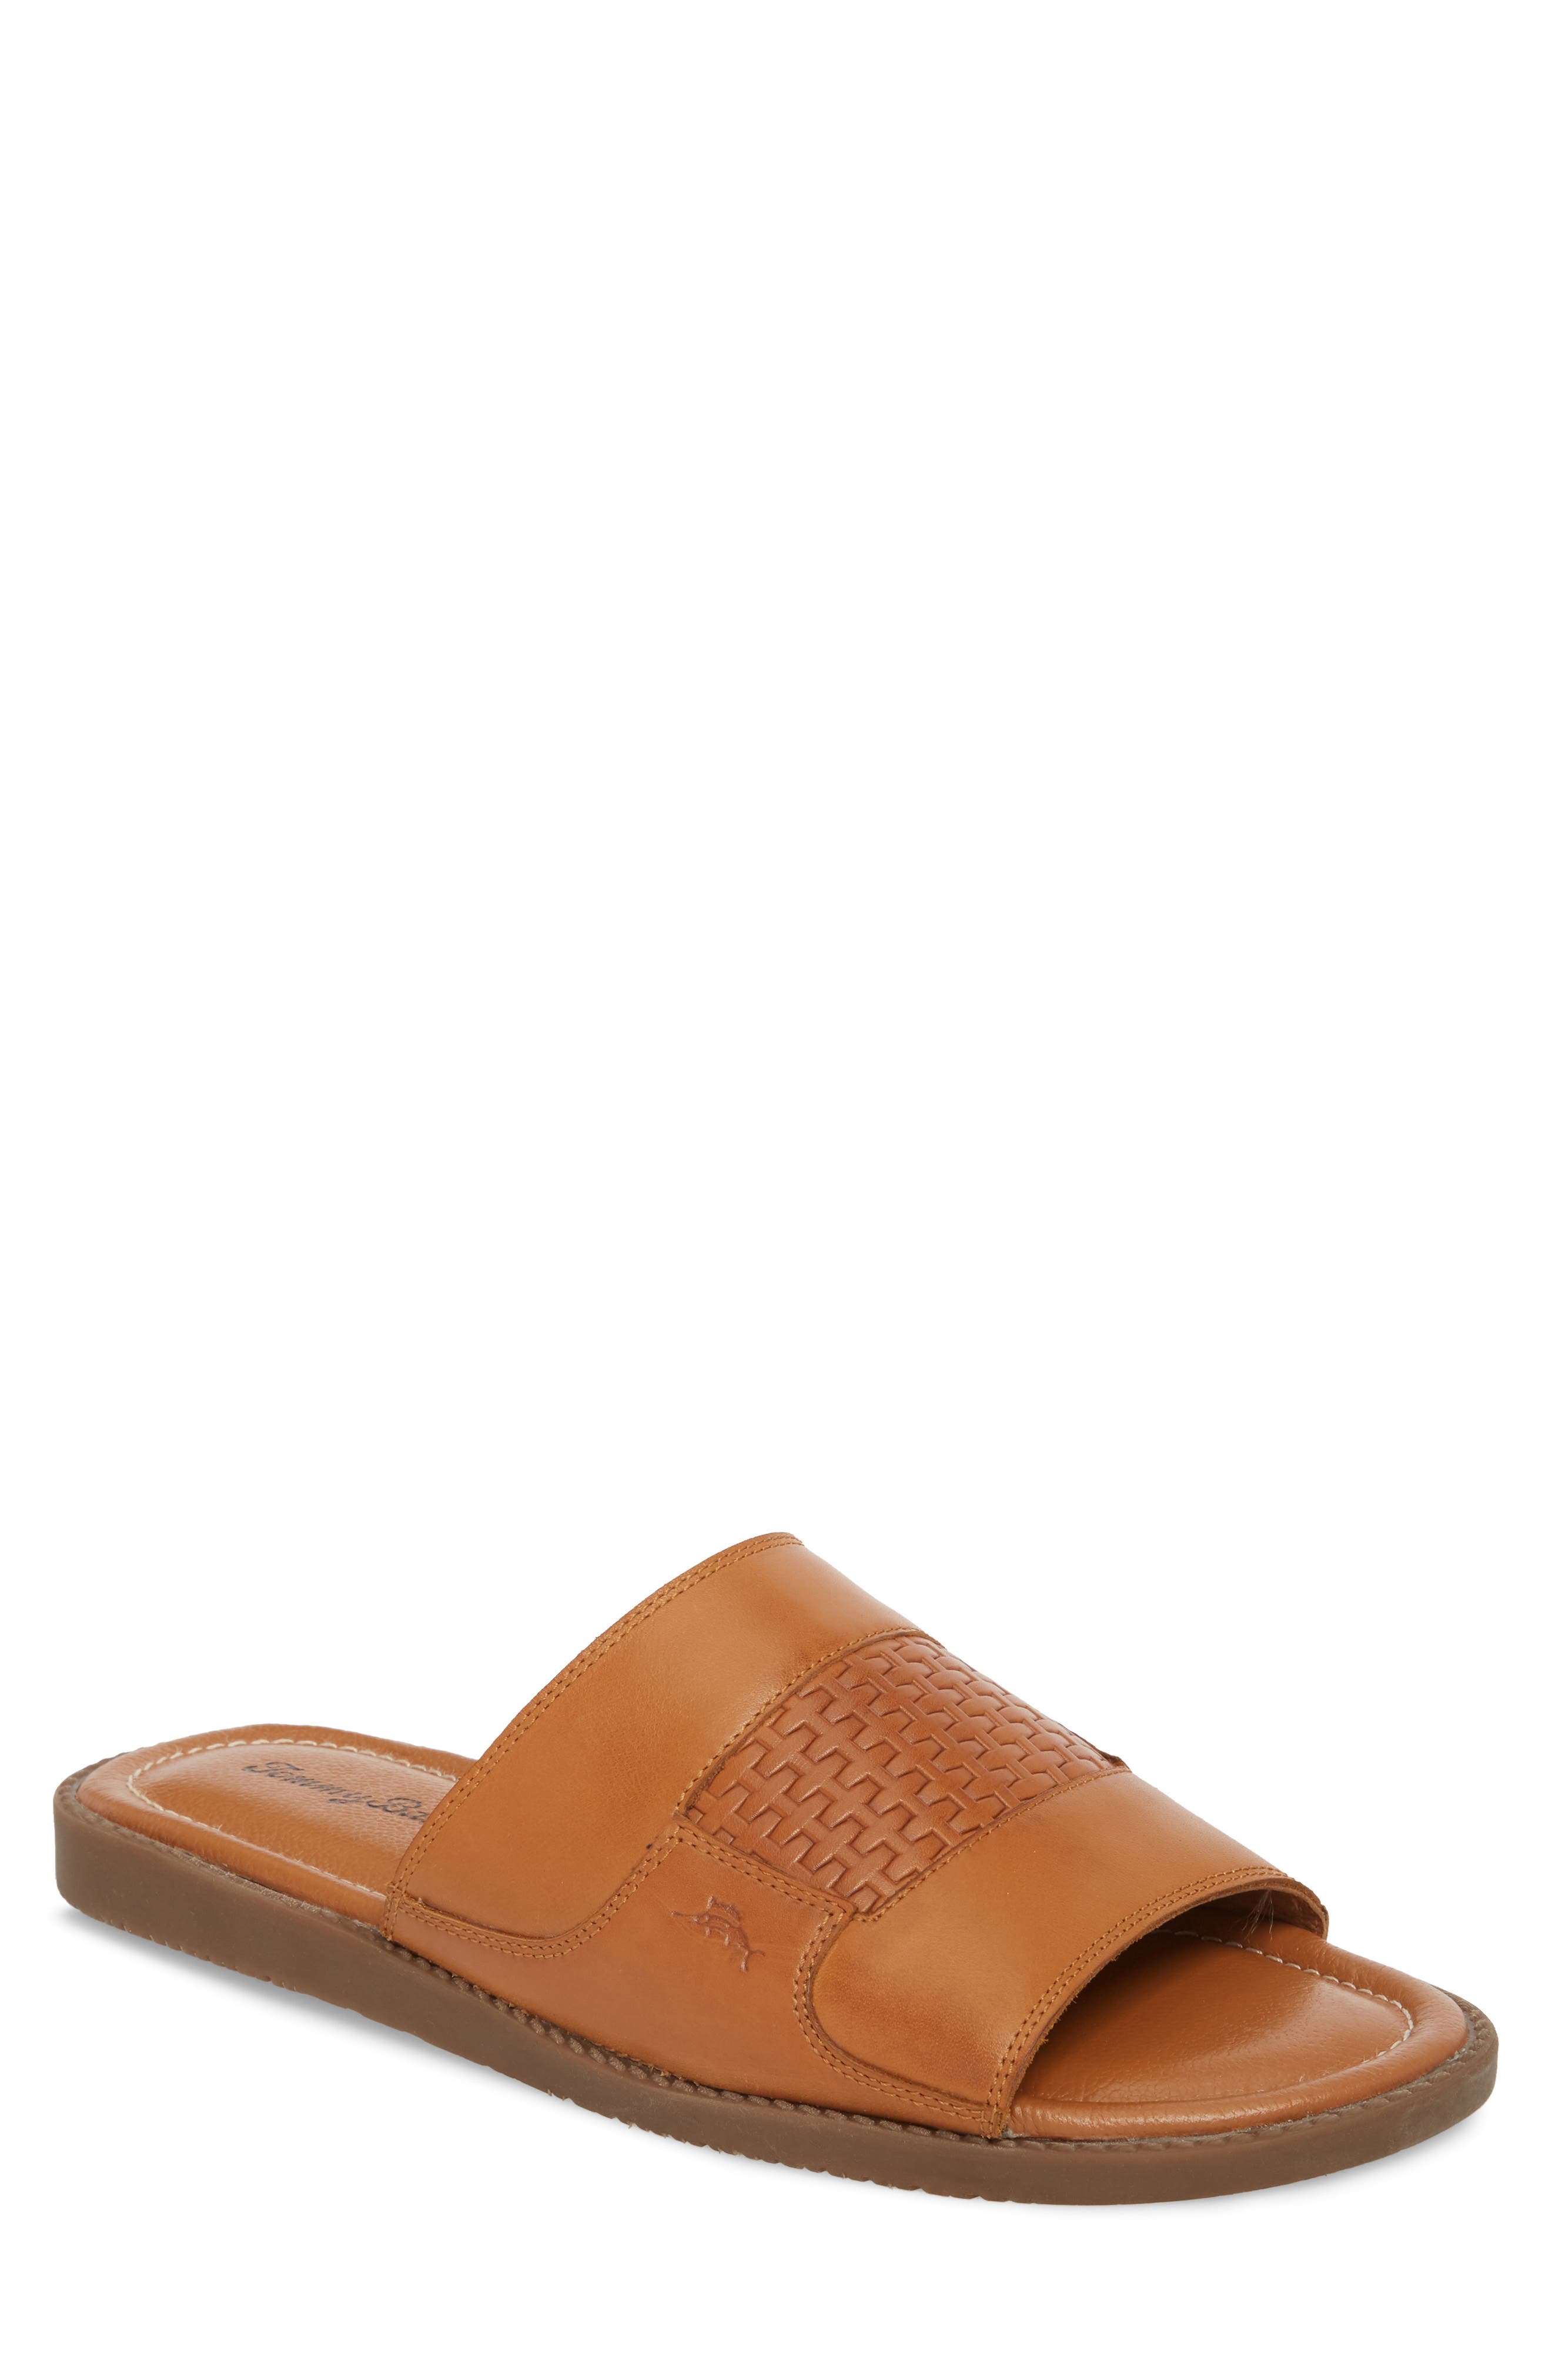 UPC 882976917007 product image for Men's Tommy Bahama Gennadi Palms Slide Sandal, Size 8 M - Brown | upcitemdb.com